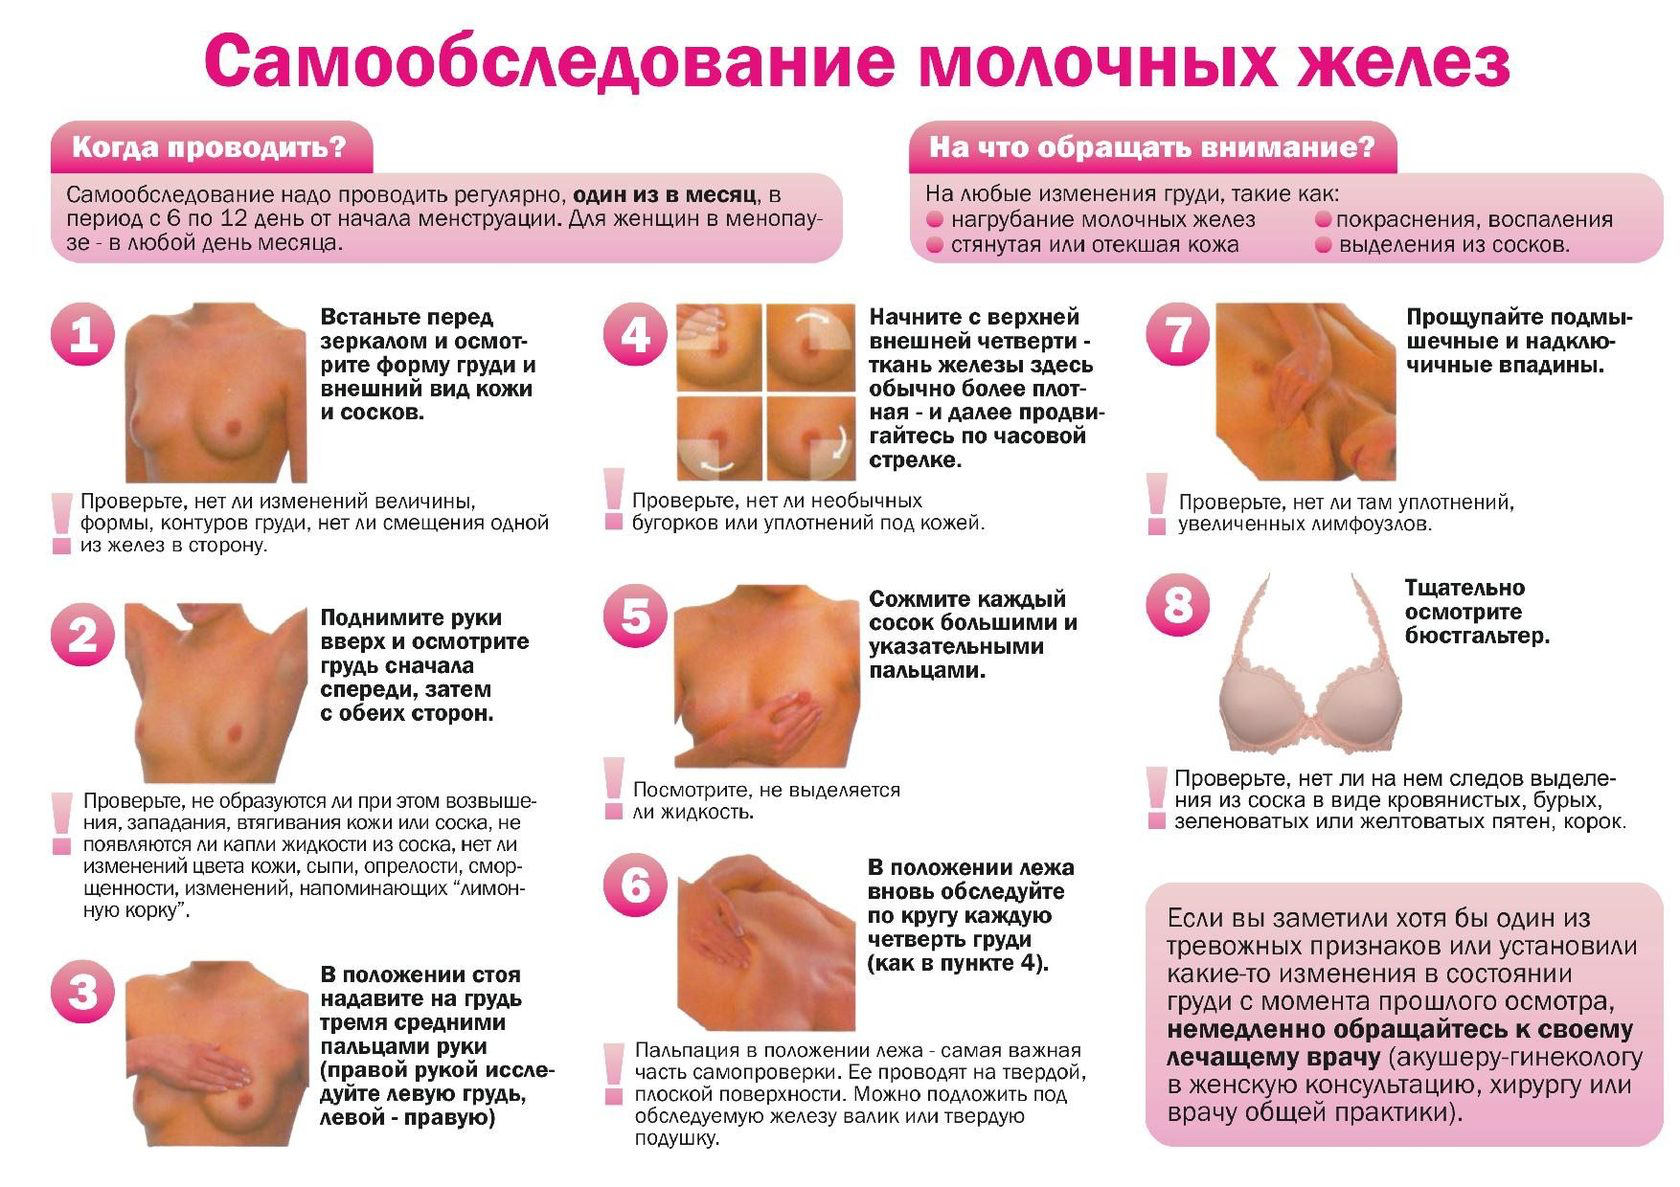 Шелушение кожи при беременности: причины и профилактика